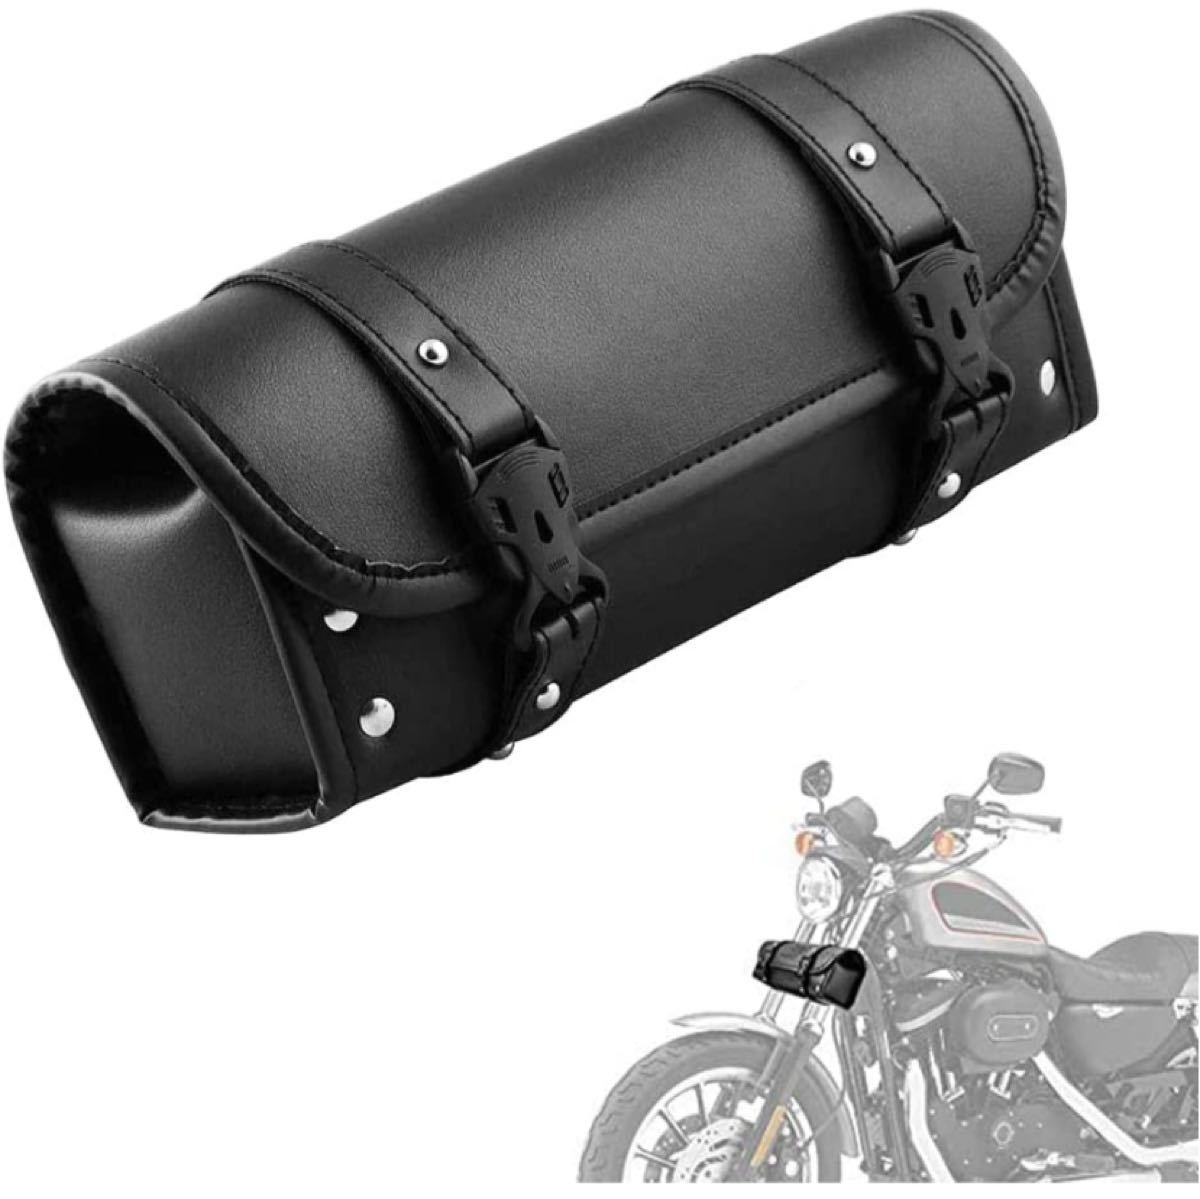 サンディエゴカスタムス SDC Bar Bag バーバッグ バイク用 ポーチ 黒